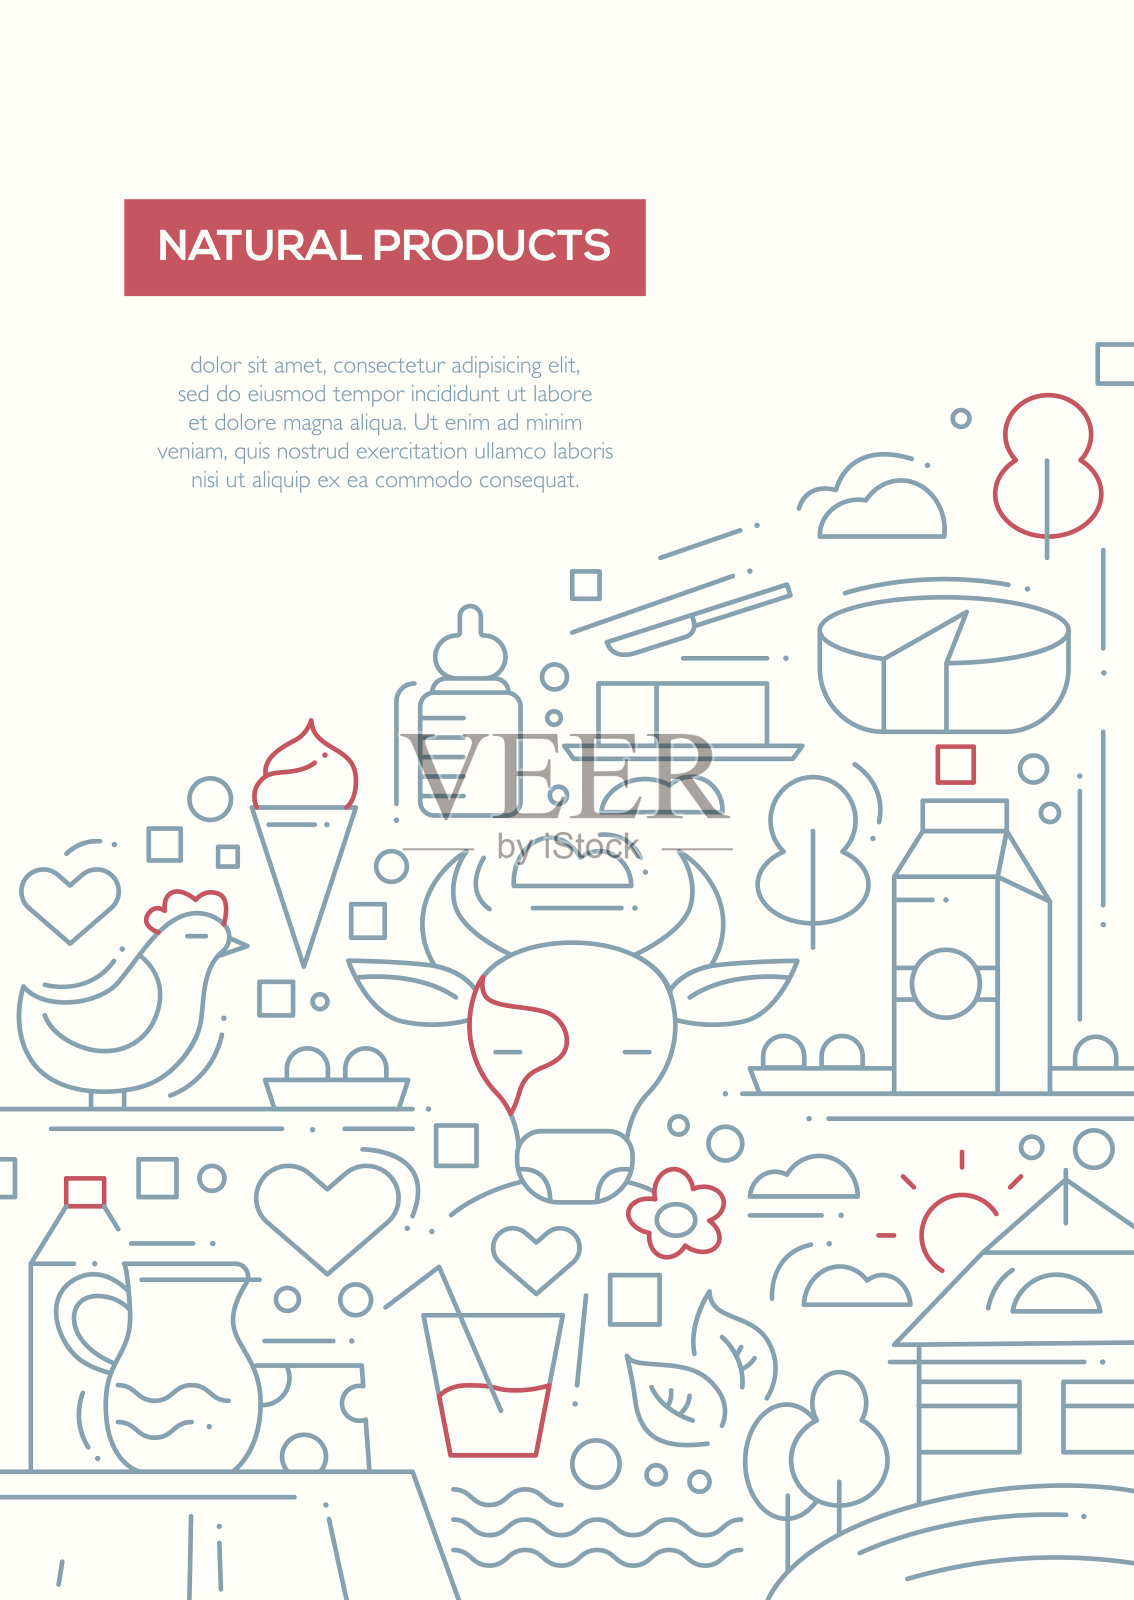 天然产品系列设计宣传册海报模板A4设计模板素材